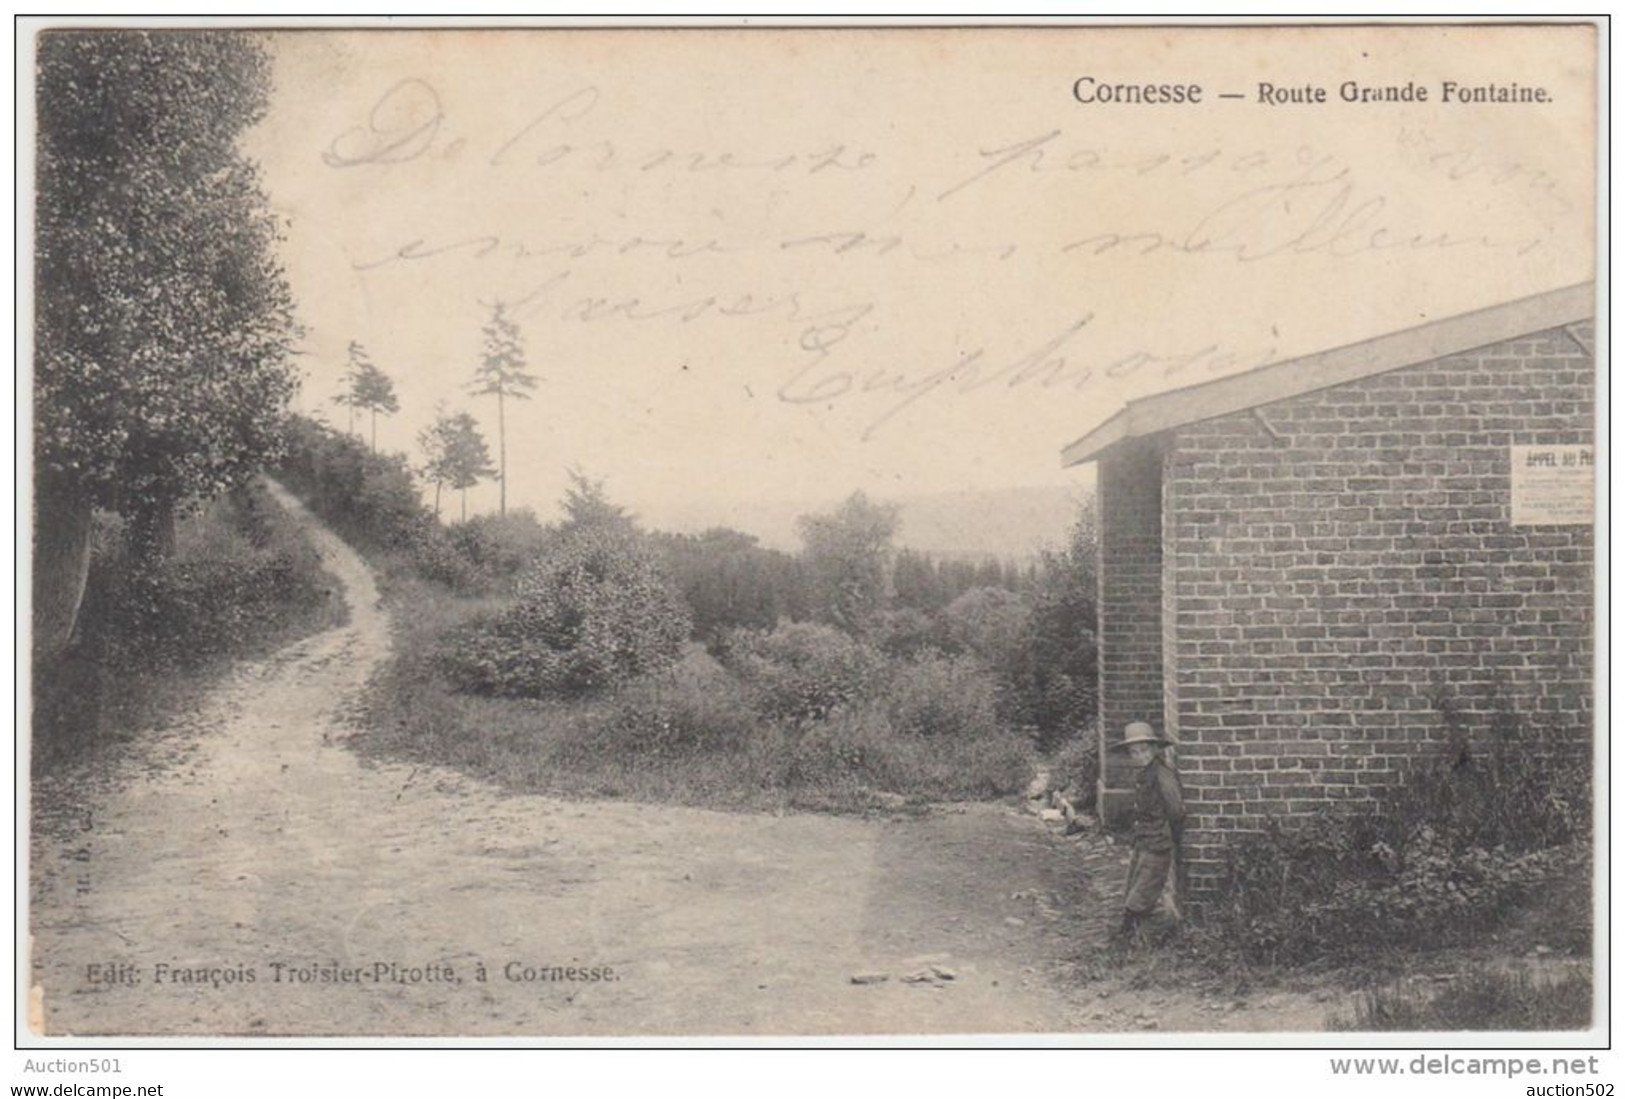 24332g ROUTE GRANDE FONTAINE - Cornesse - 1905 - Pepinster